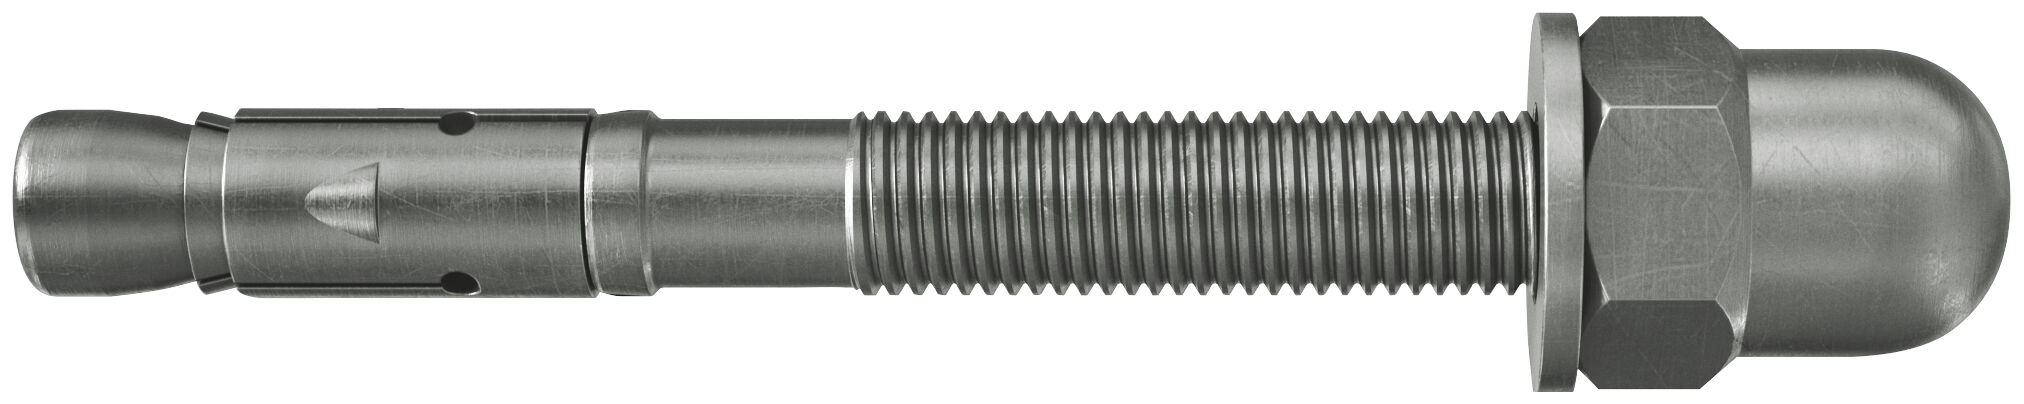 fischer bolt anchor FAZ II 12/10 H R cap nut stainless steel